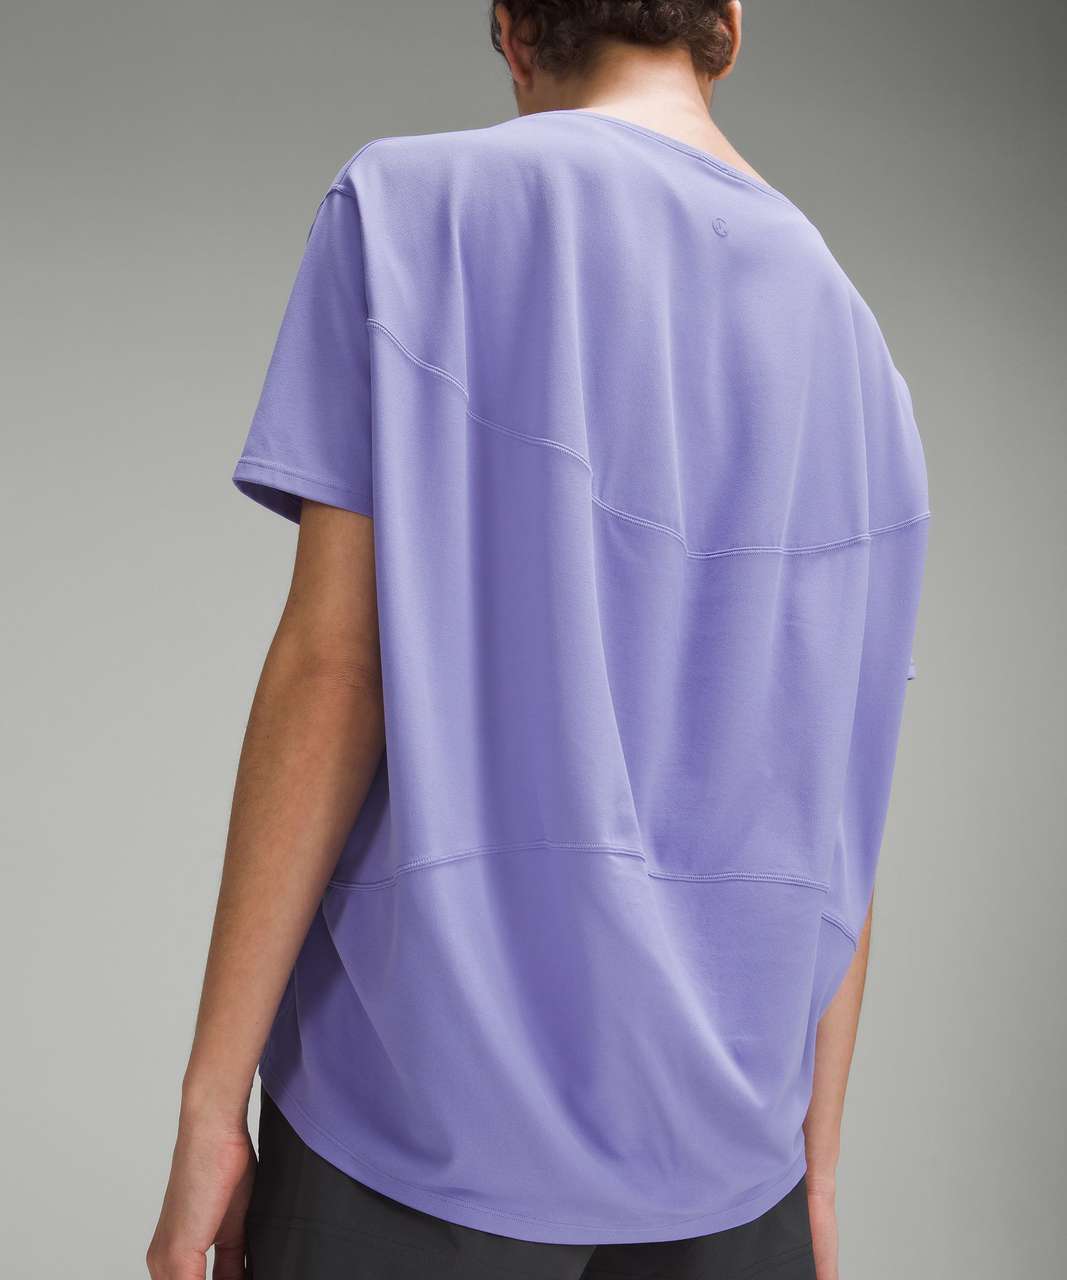 Lululemon Back in Action Short-Sleeve Shirt *Nulu - Dark Lavender